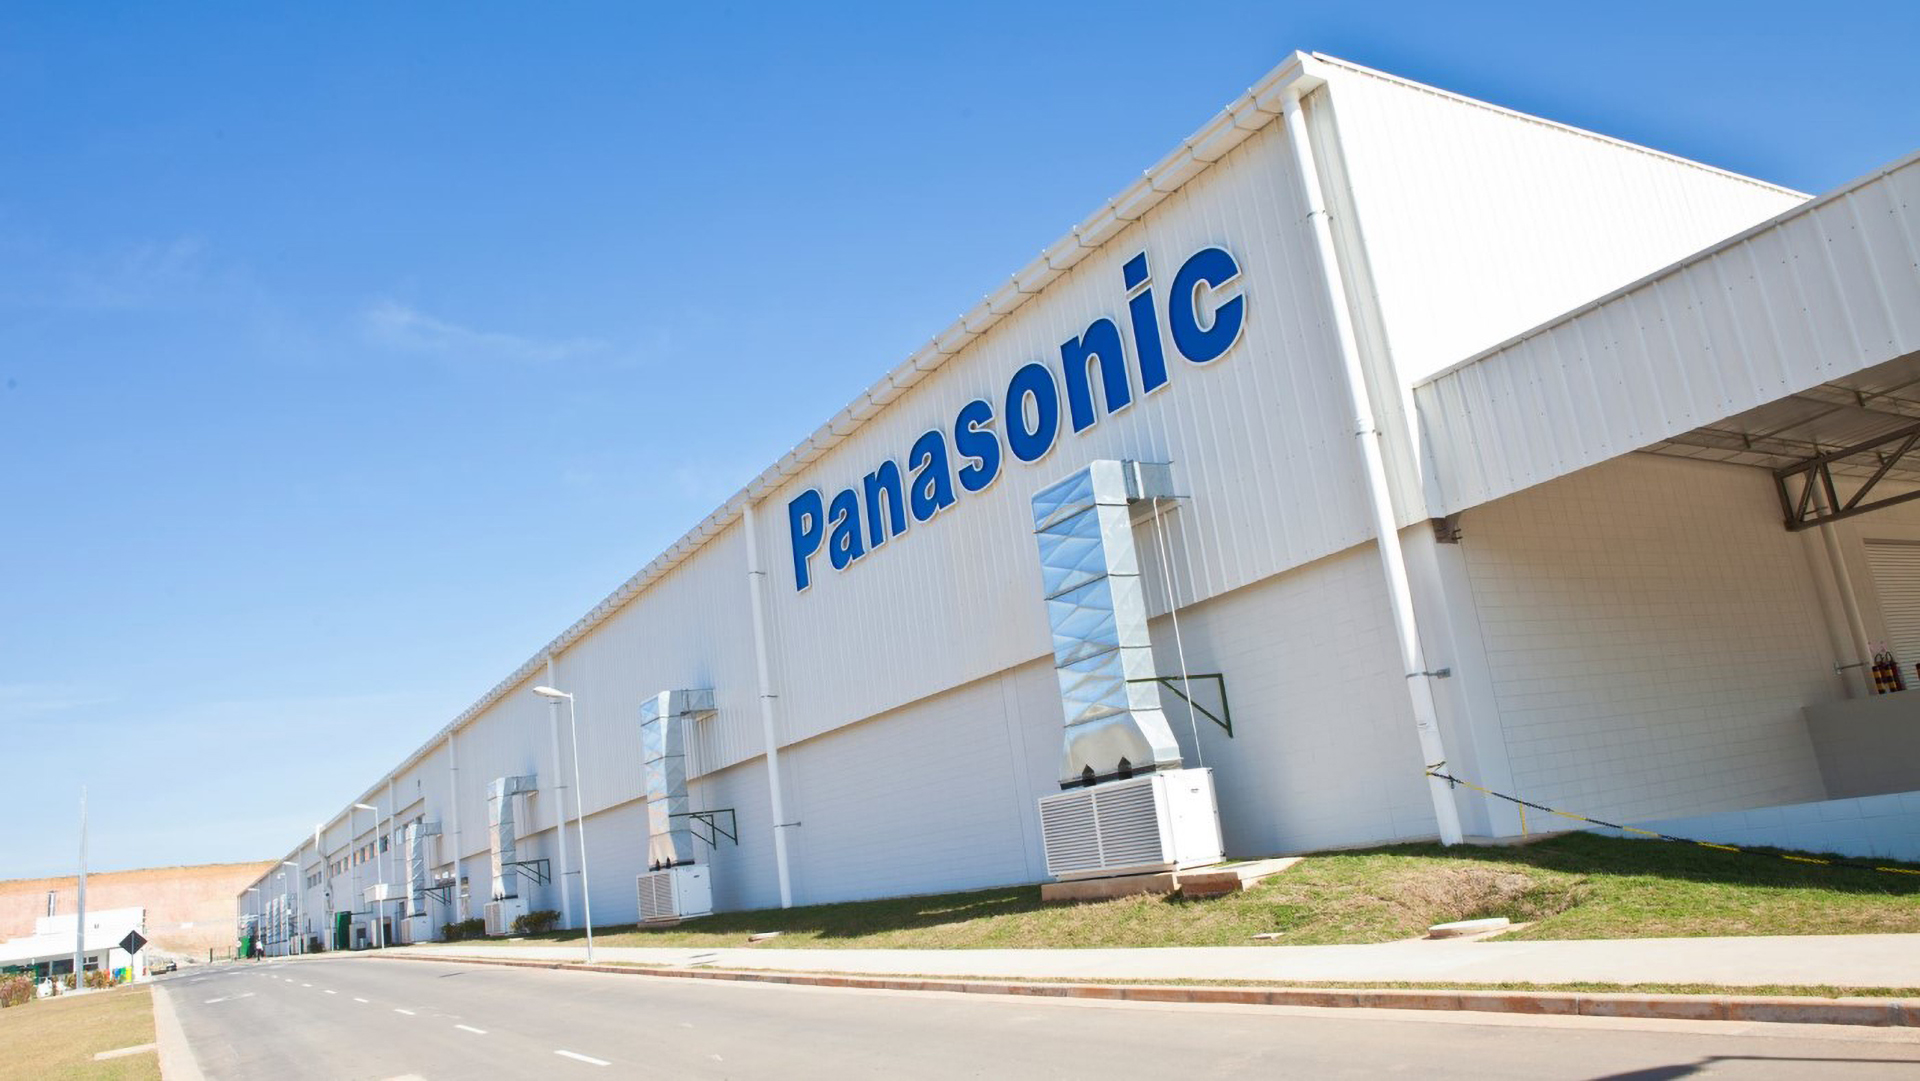 Panasonic Trabalhe conosco Gigante multinacional Japonesa abre processo seletivo com vagas de emprego para diversas localidades do Brasil